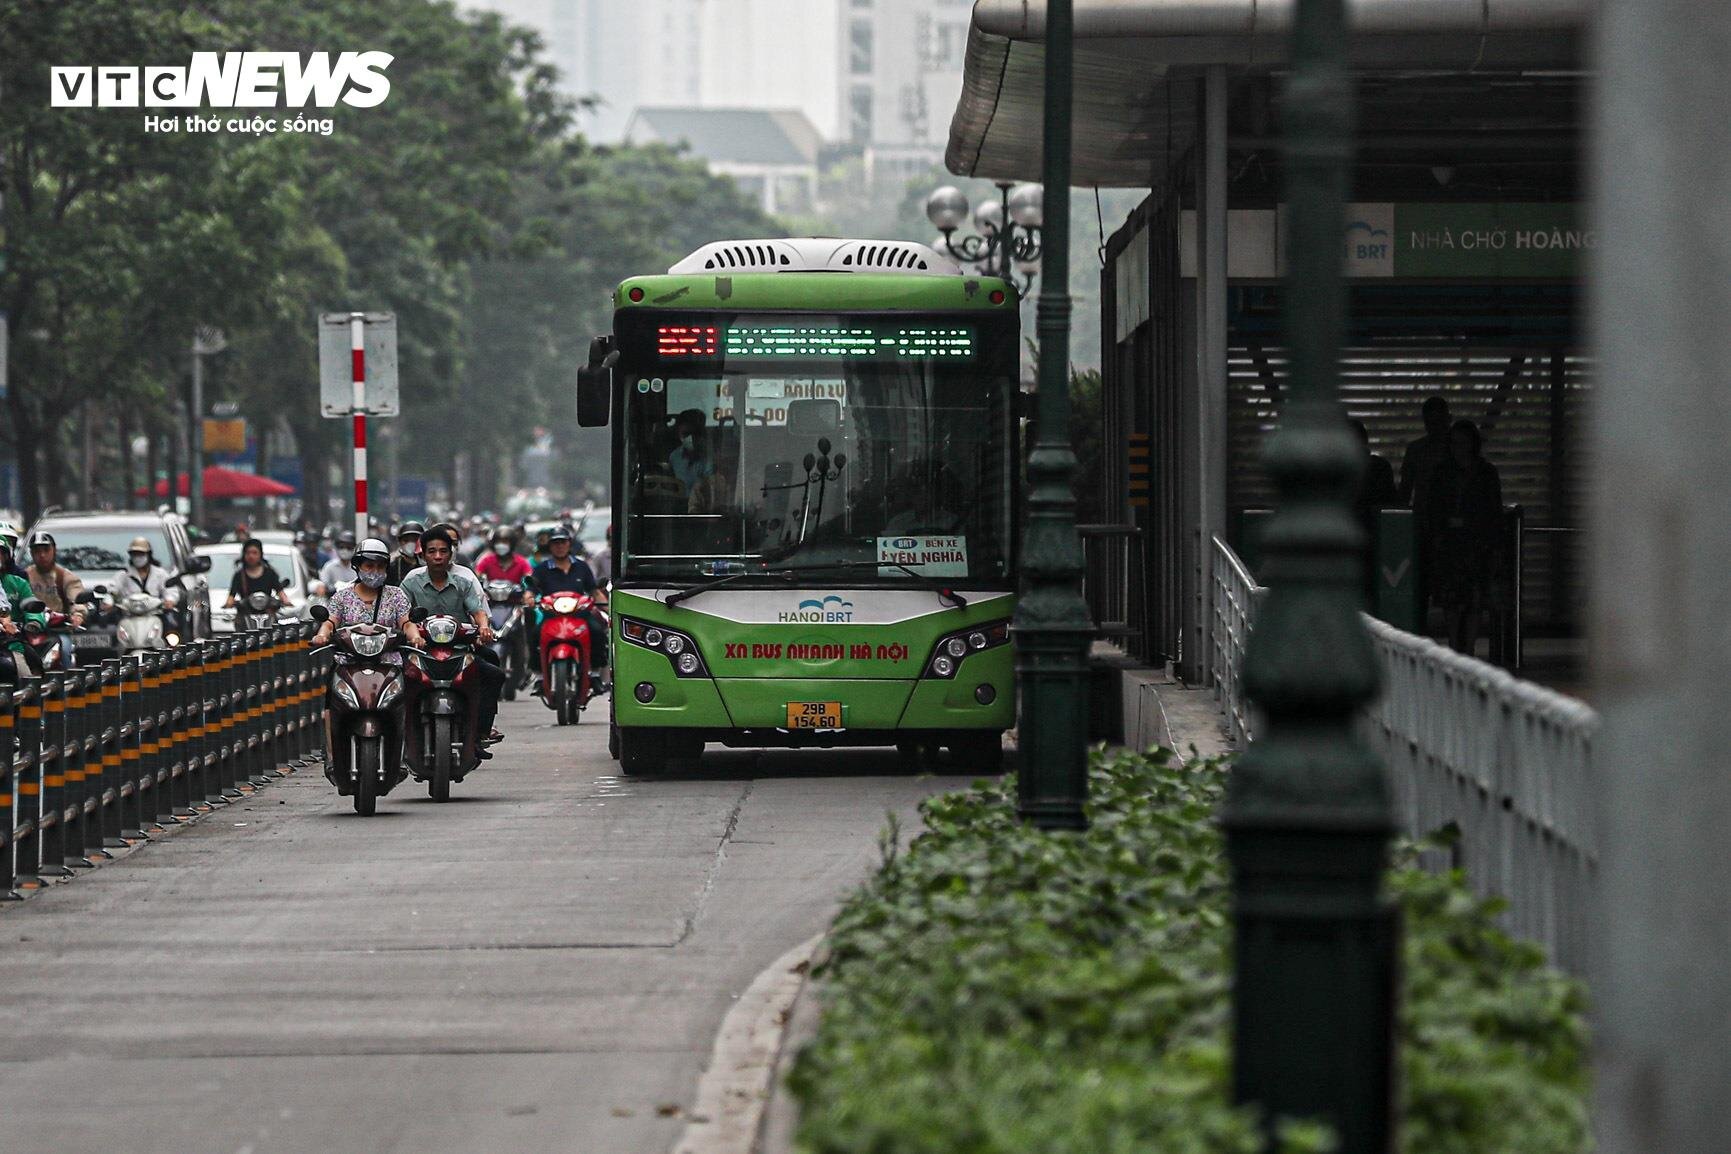 Bị cướp làn đường, buýt nhanh BRT chôn chân trên phố Hà Nội - 8